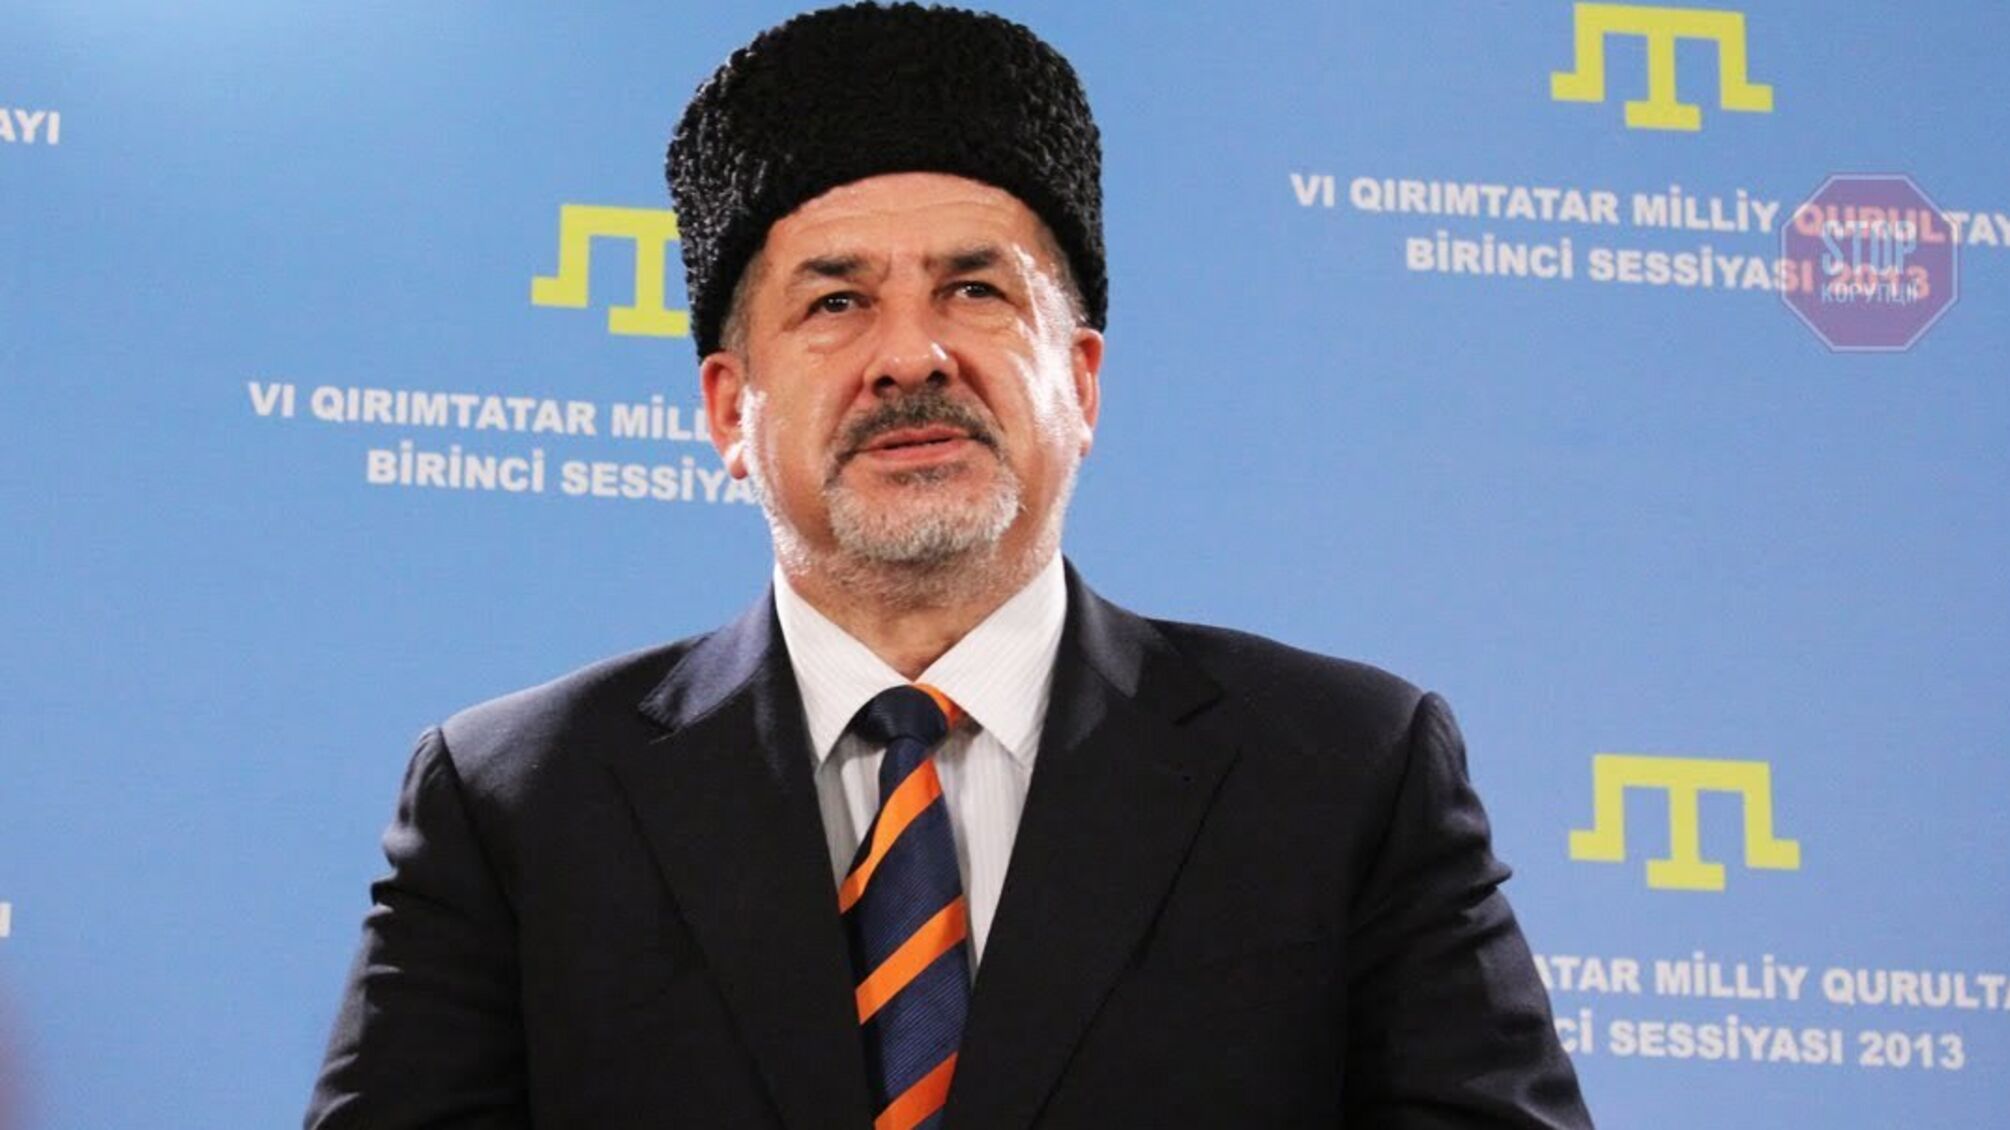 У списках на обмін не буде жодного з понад 65-ти політв'язнів-кримських татар – Чубаров